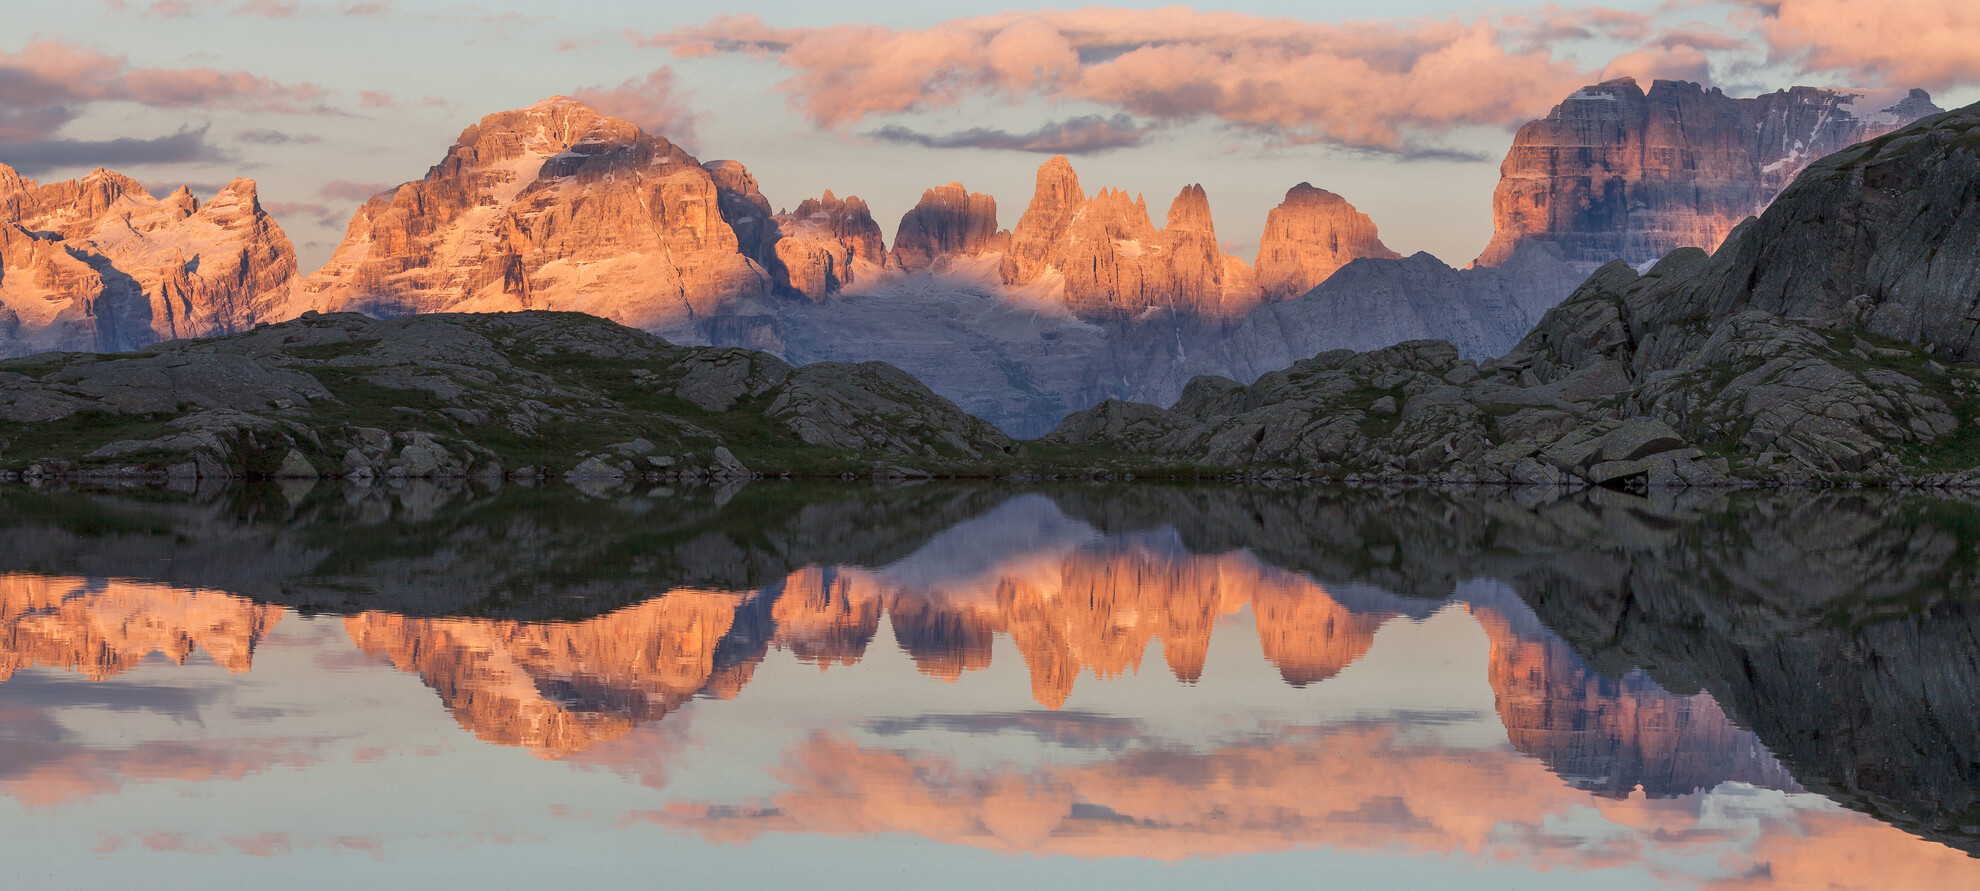 Madonna di Campiglio - Gruppo del Brenta dal Lago Nero - Dolomiten